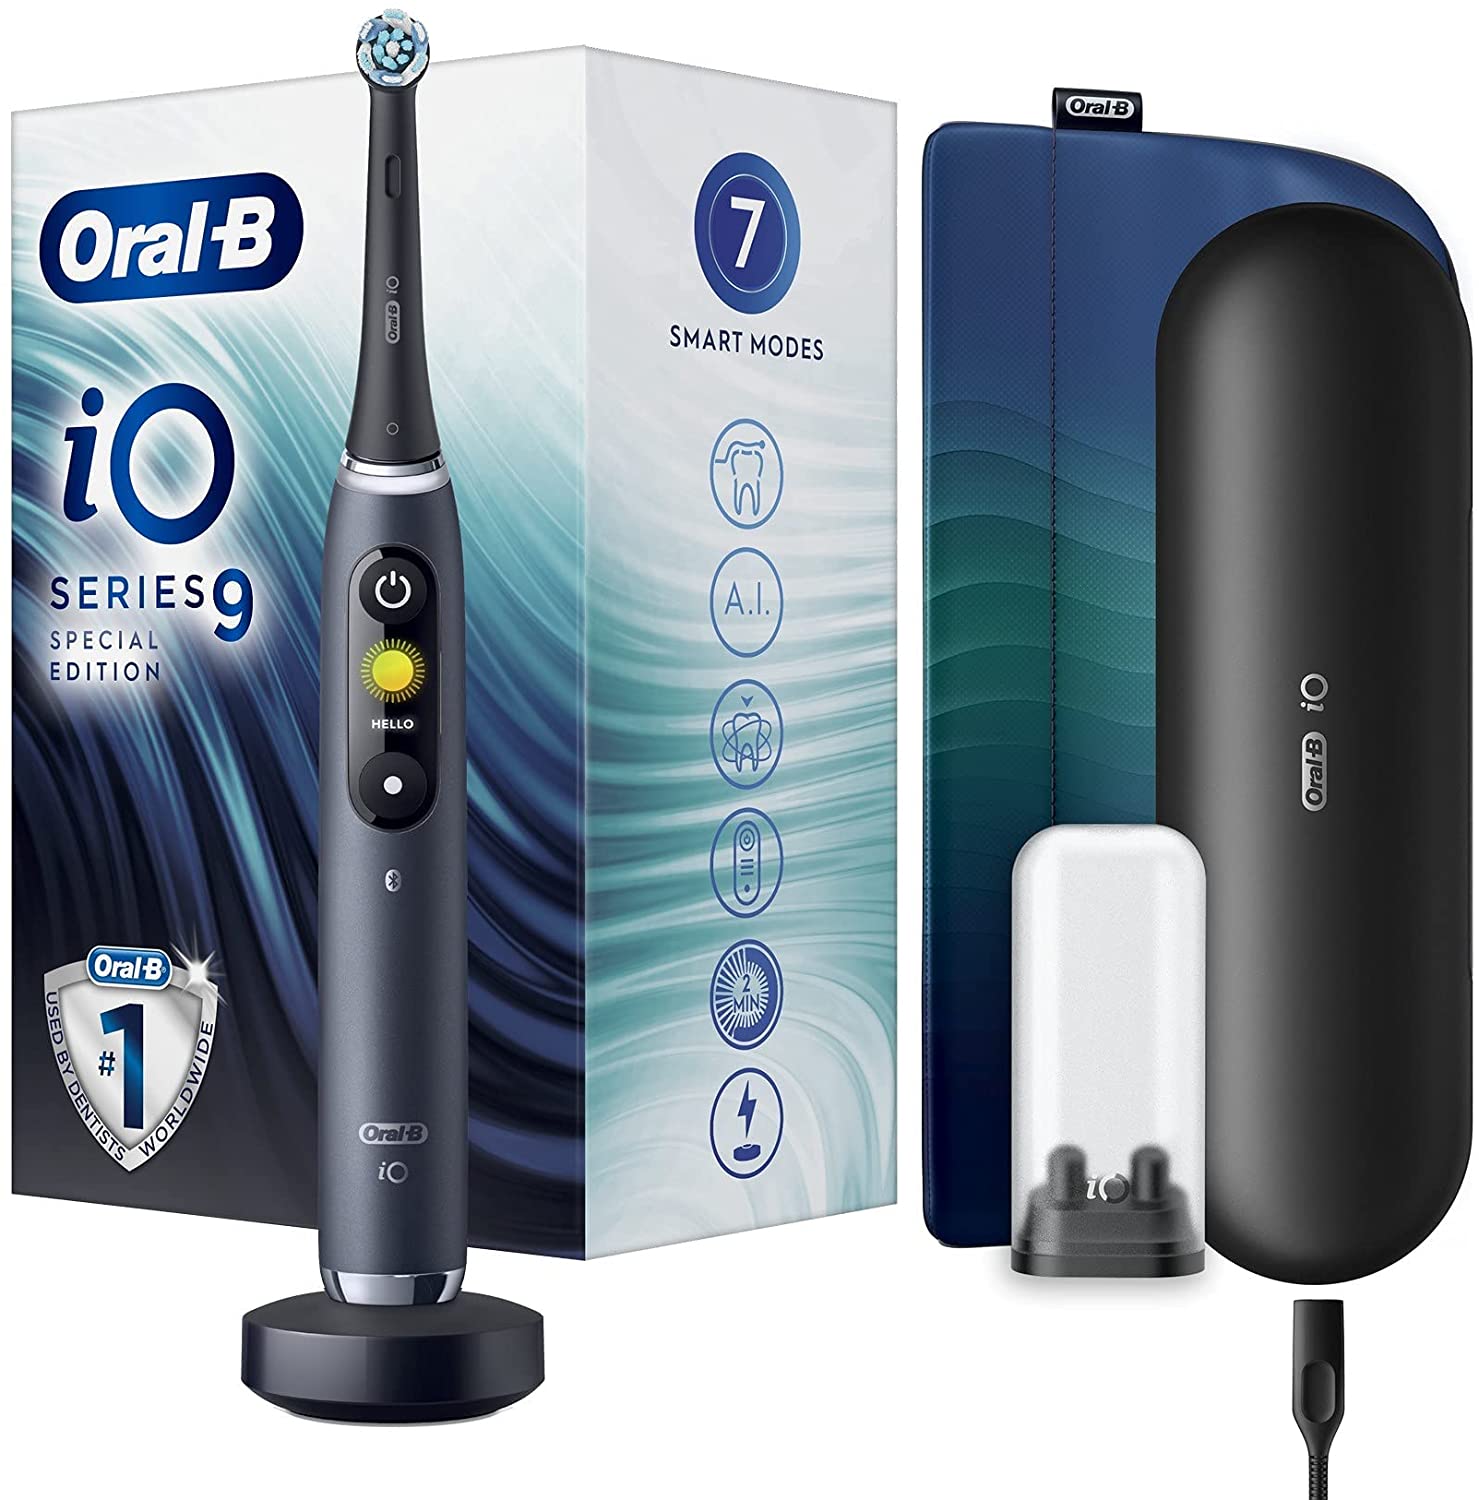 Oral-B iO 9 vs Oral-B iO 8 vs Oral-B iO 7 vs Oral-B iO 10